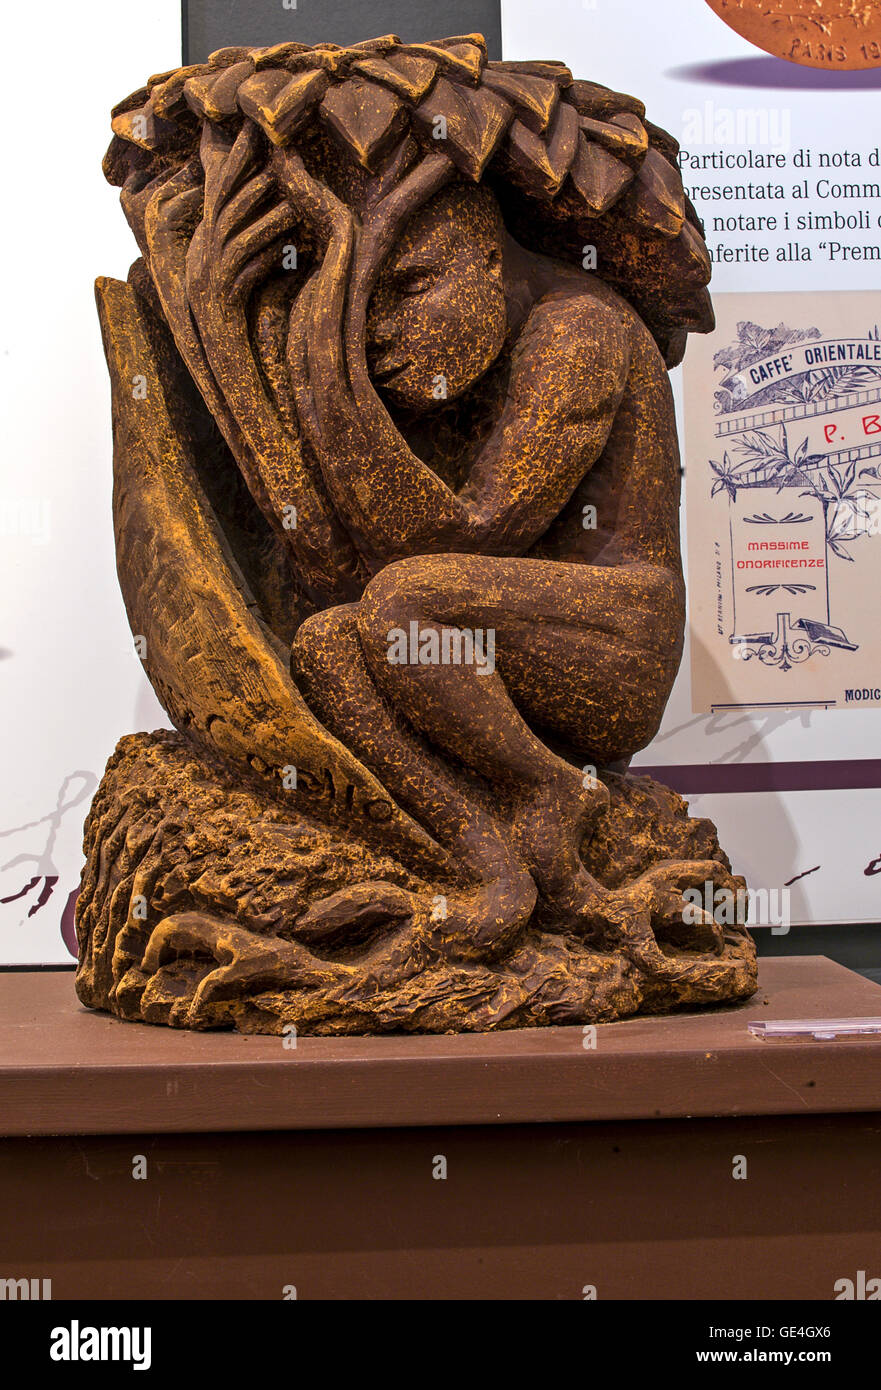 Italien Sizilien Modica - Schokoladenmuseum - Skulpturen von Modica Schokolade - gemacht zur Expo 2015-wir Samen des Lebens Bildhauerin Elisa Corallo Stockfoto